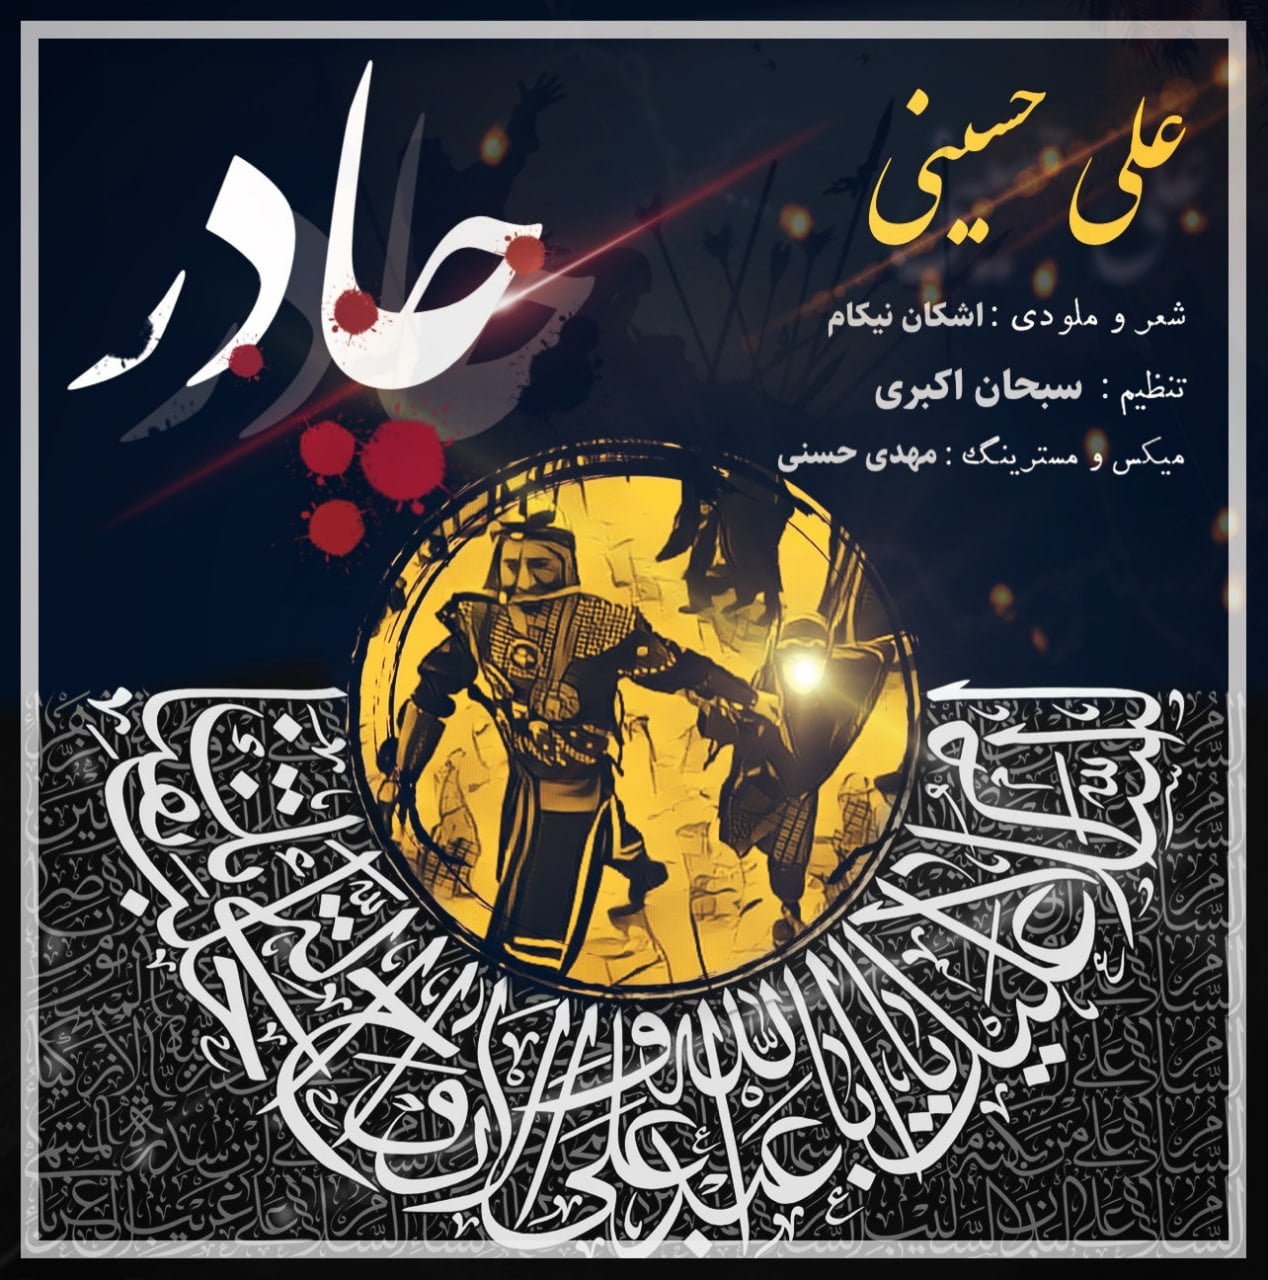 دانلود آهنگ جدید علی حسینی با عنوان چادر